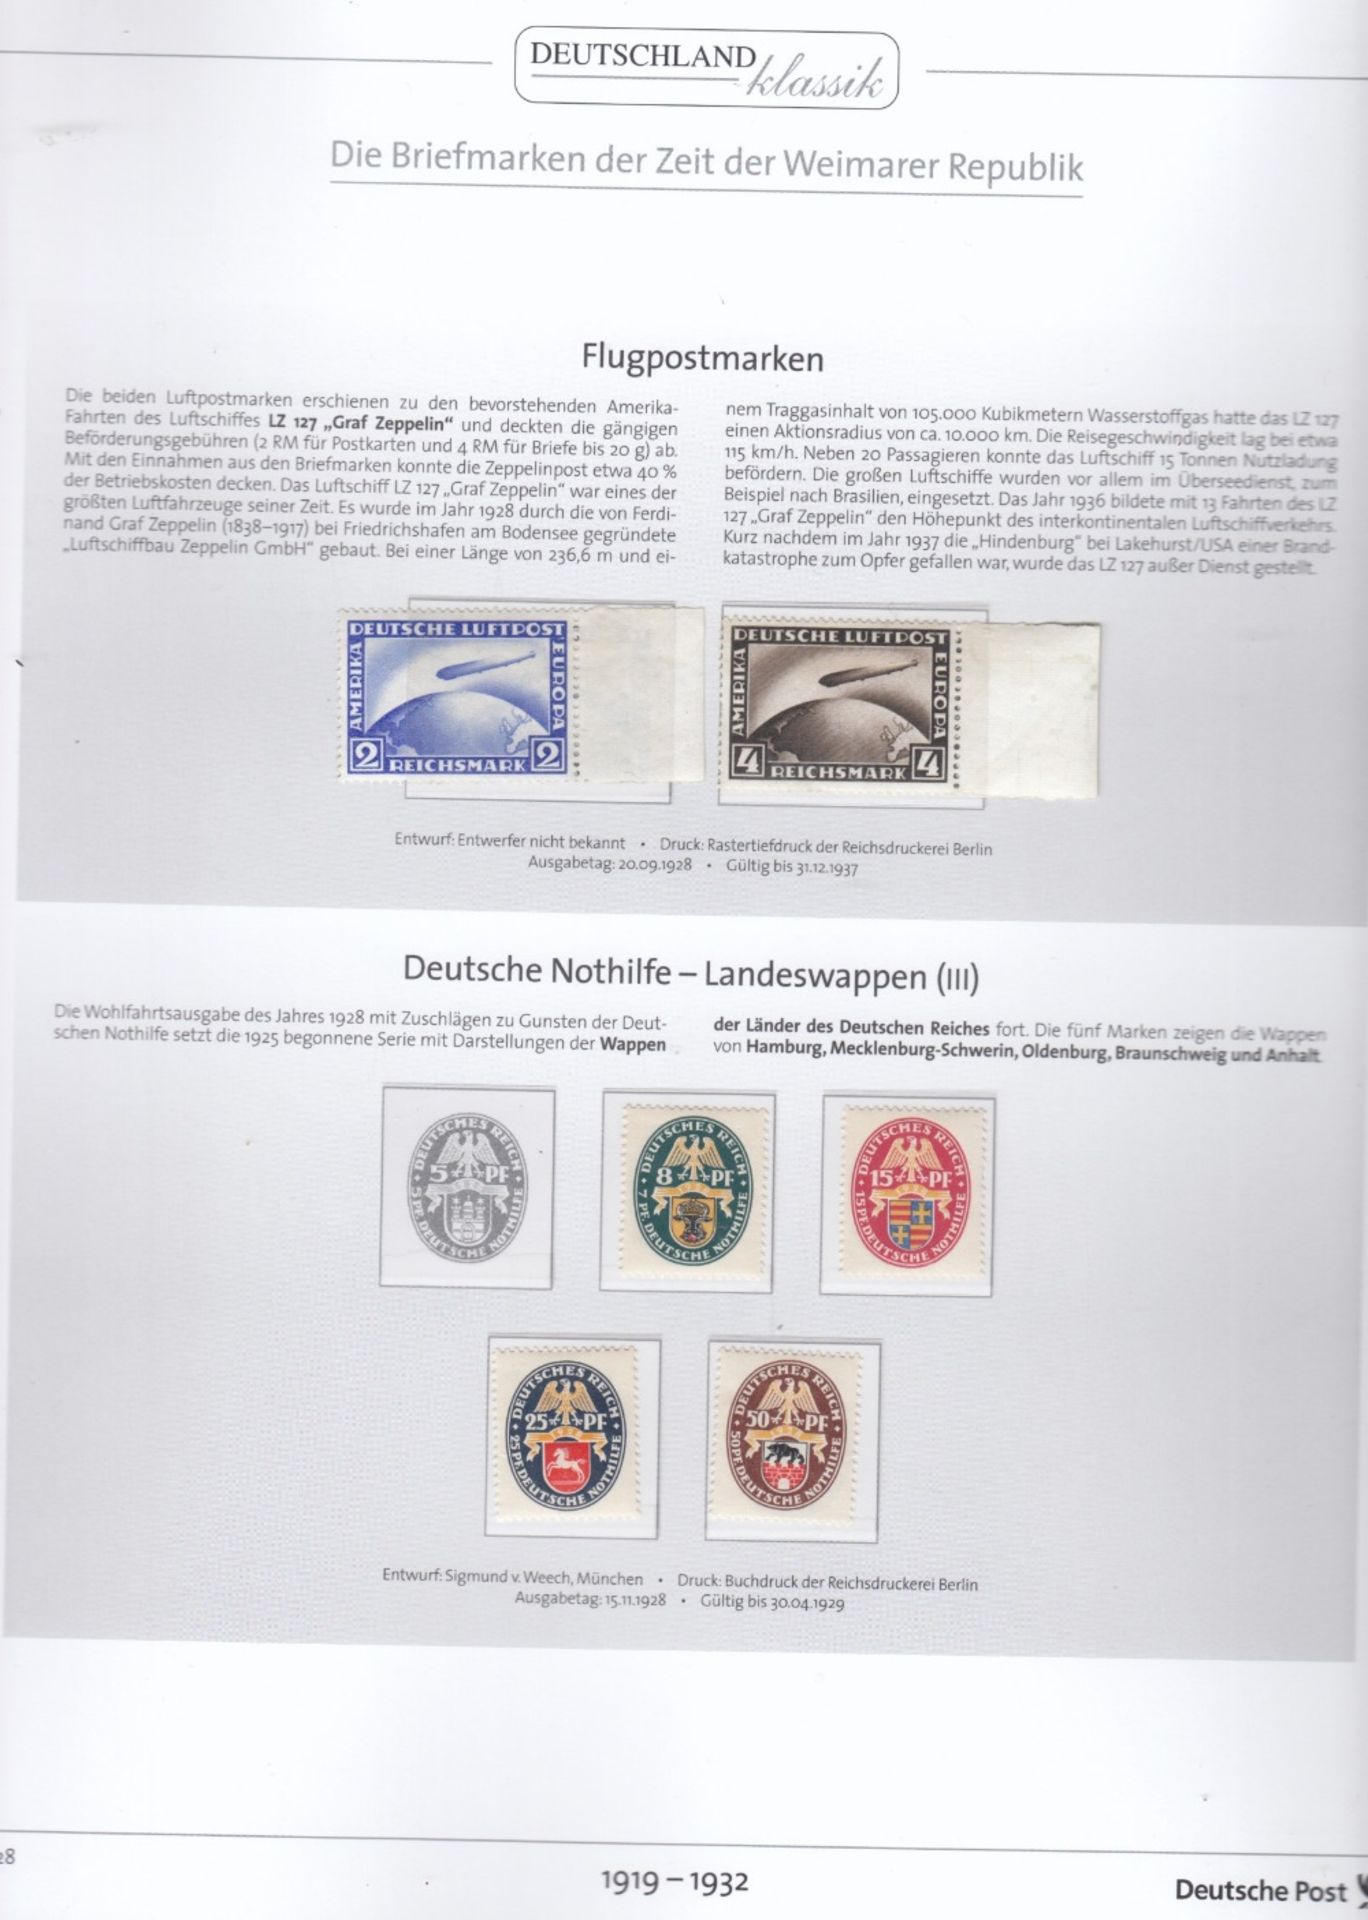 DEUTSCHES REICH WEIMARER REPUBLIK 1919-1932 ALBUM - Bild 3 aus 5